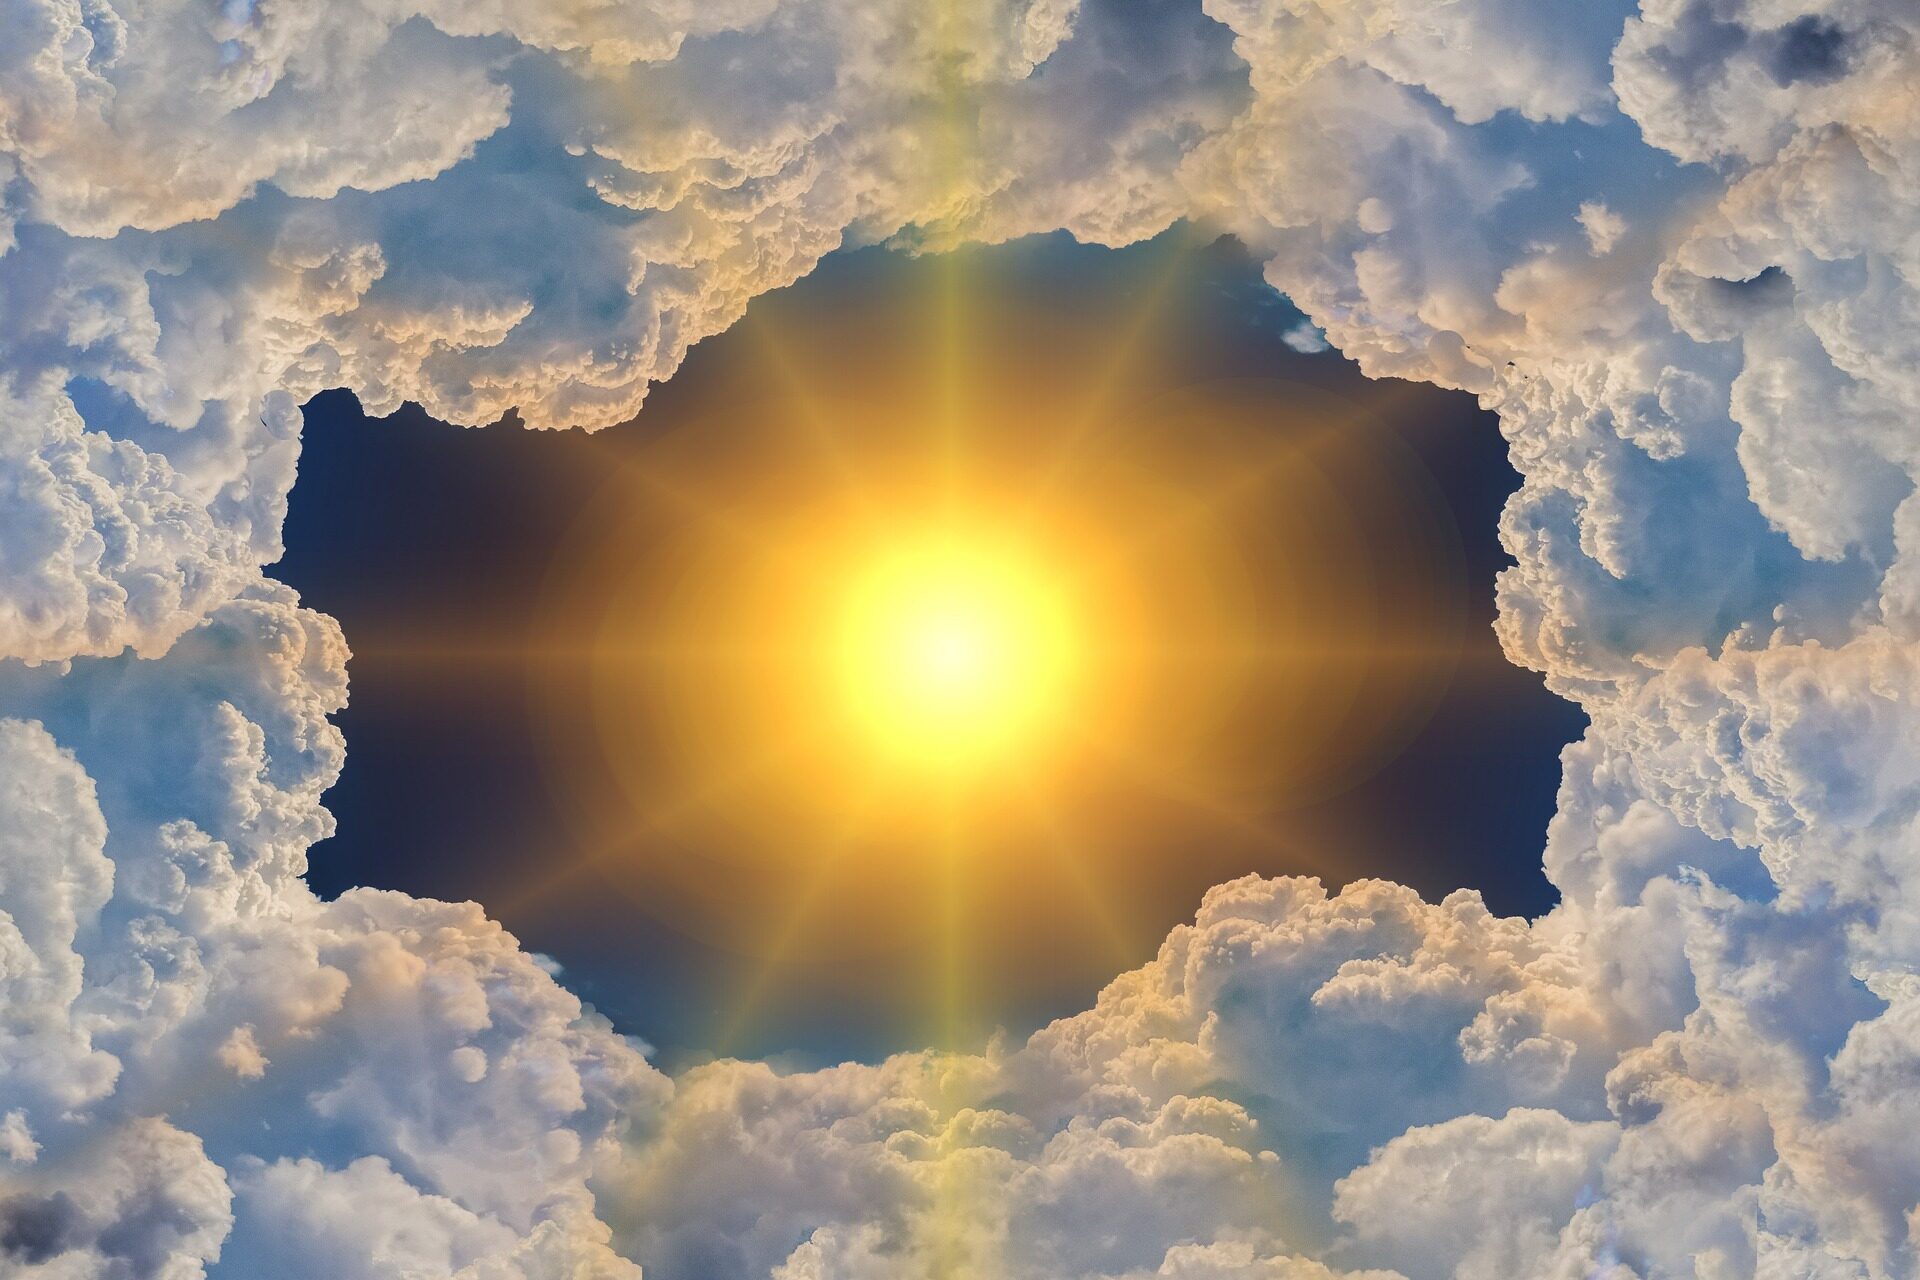 Bild einer Sonne, die durch Wolken hervorstrahlt als Veranschaulichung von Klima und Klimawandel.